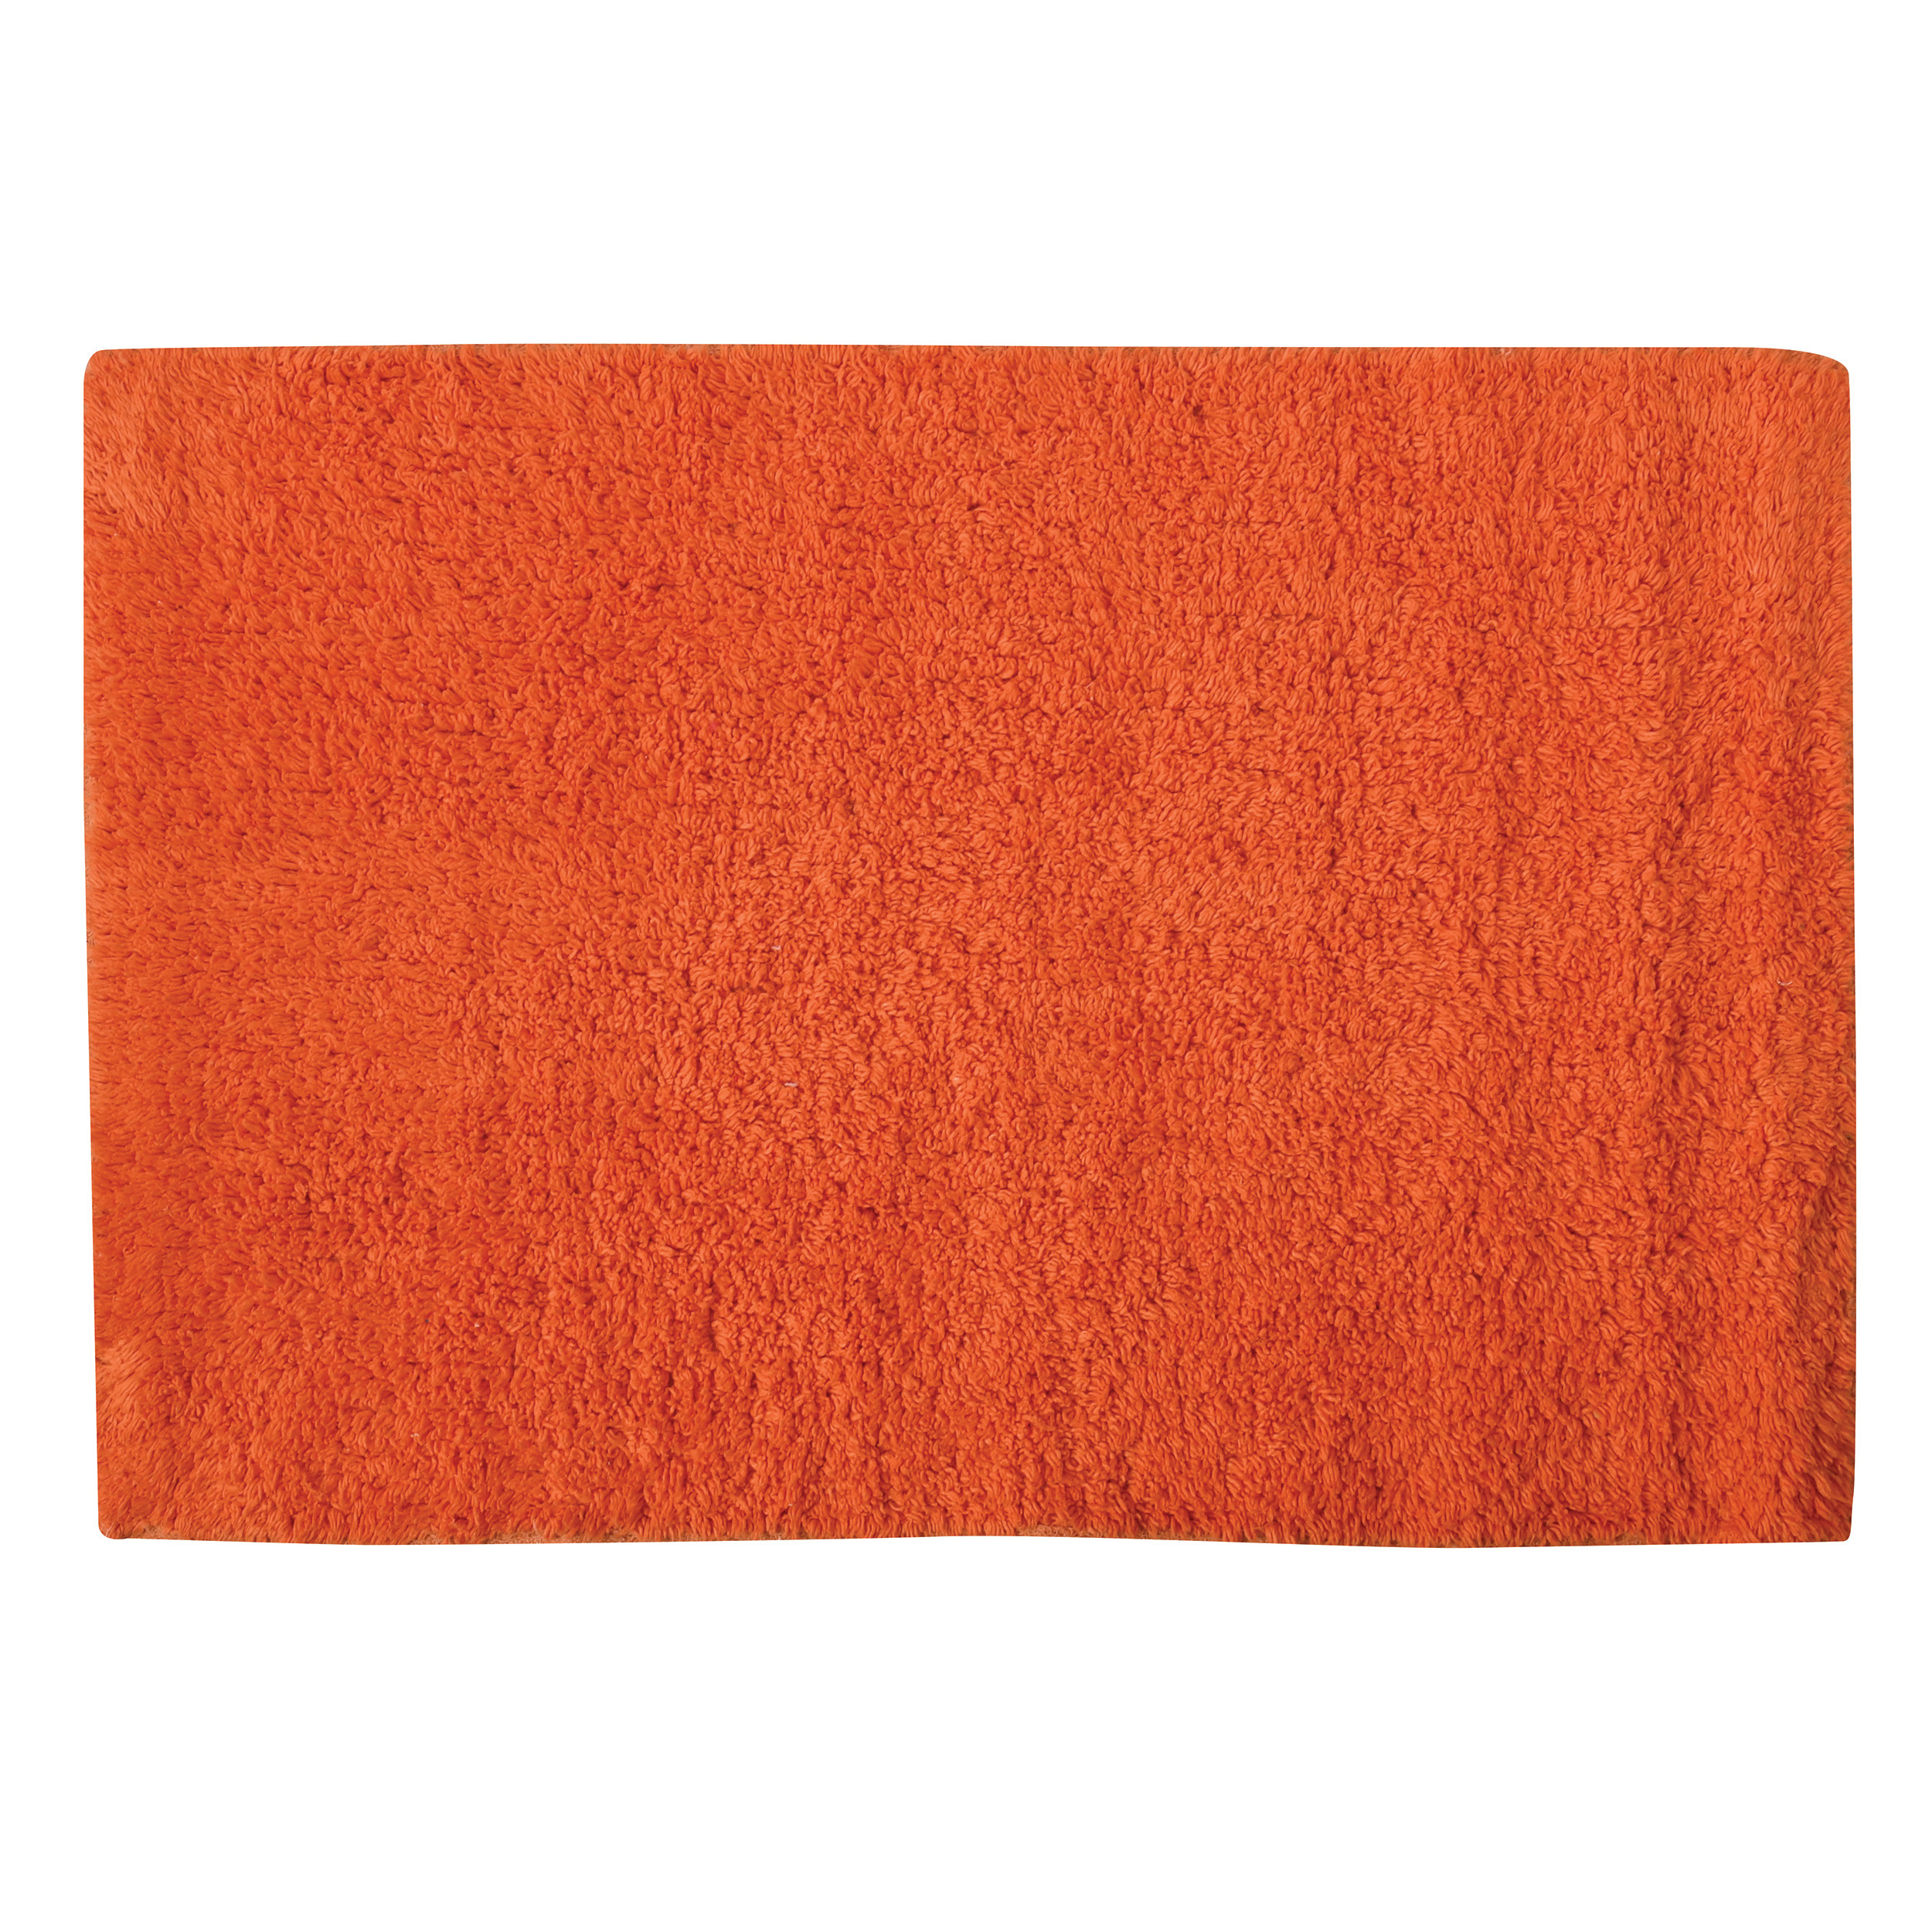 Badkamerkleedje-badmat tapijtje voor op de vloer oranje 40 x 60 cm